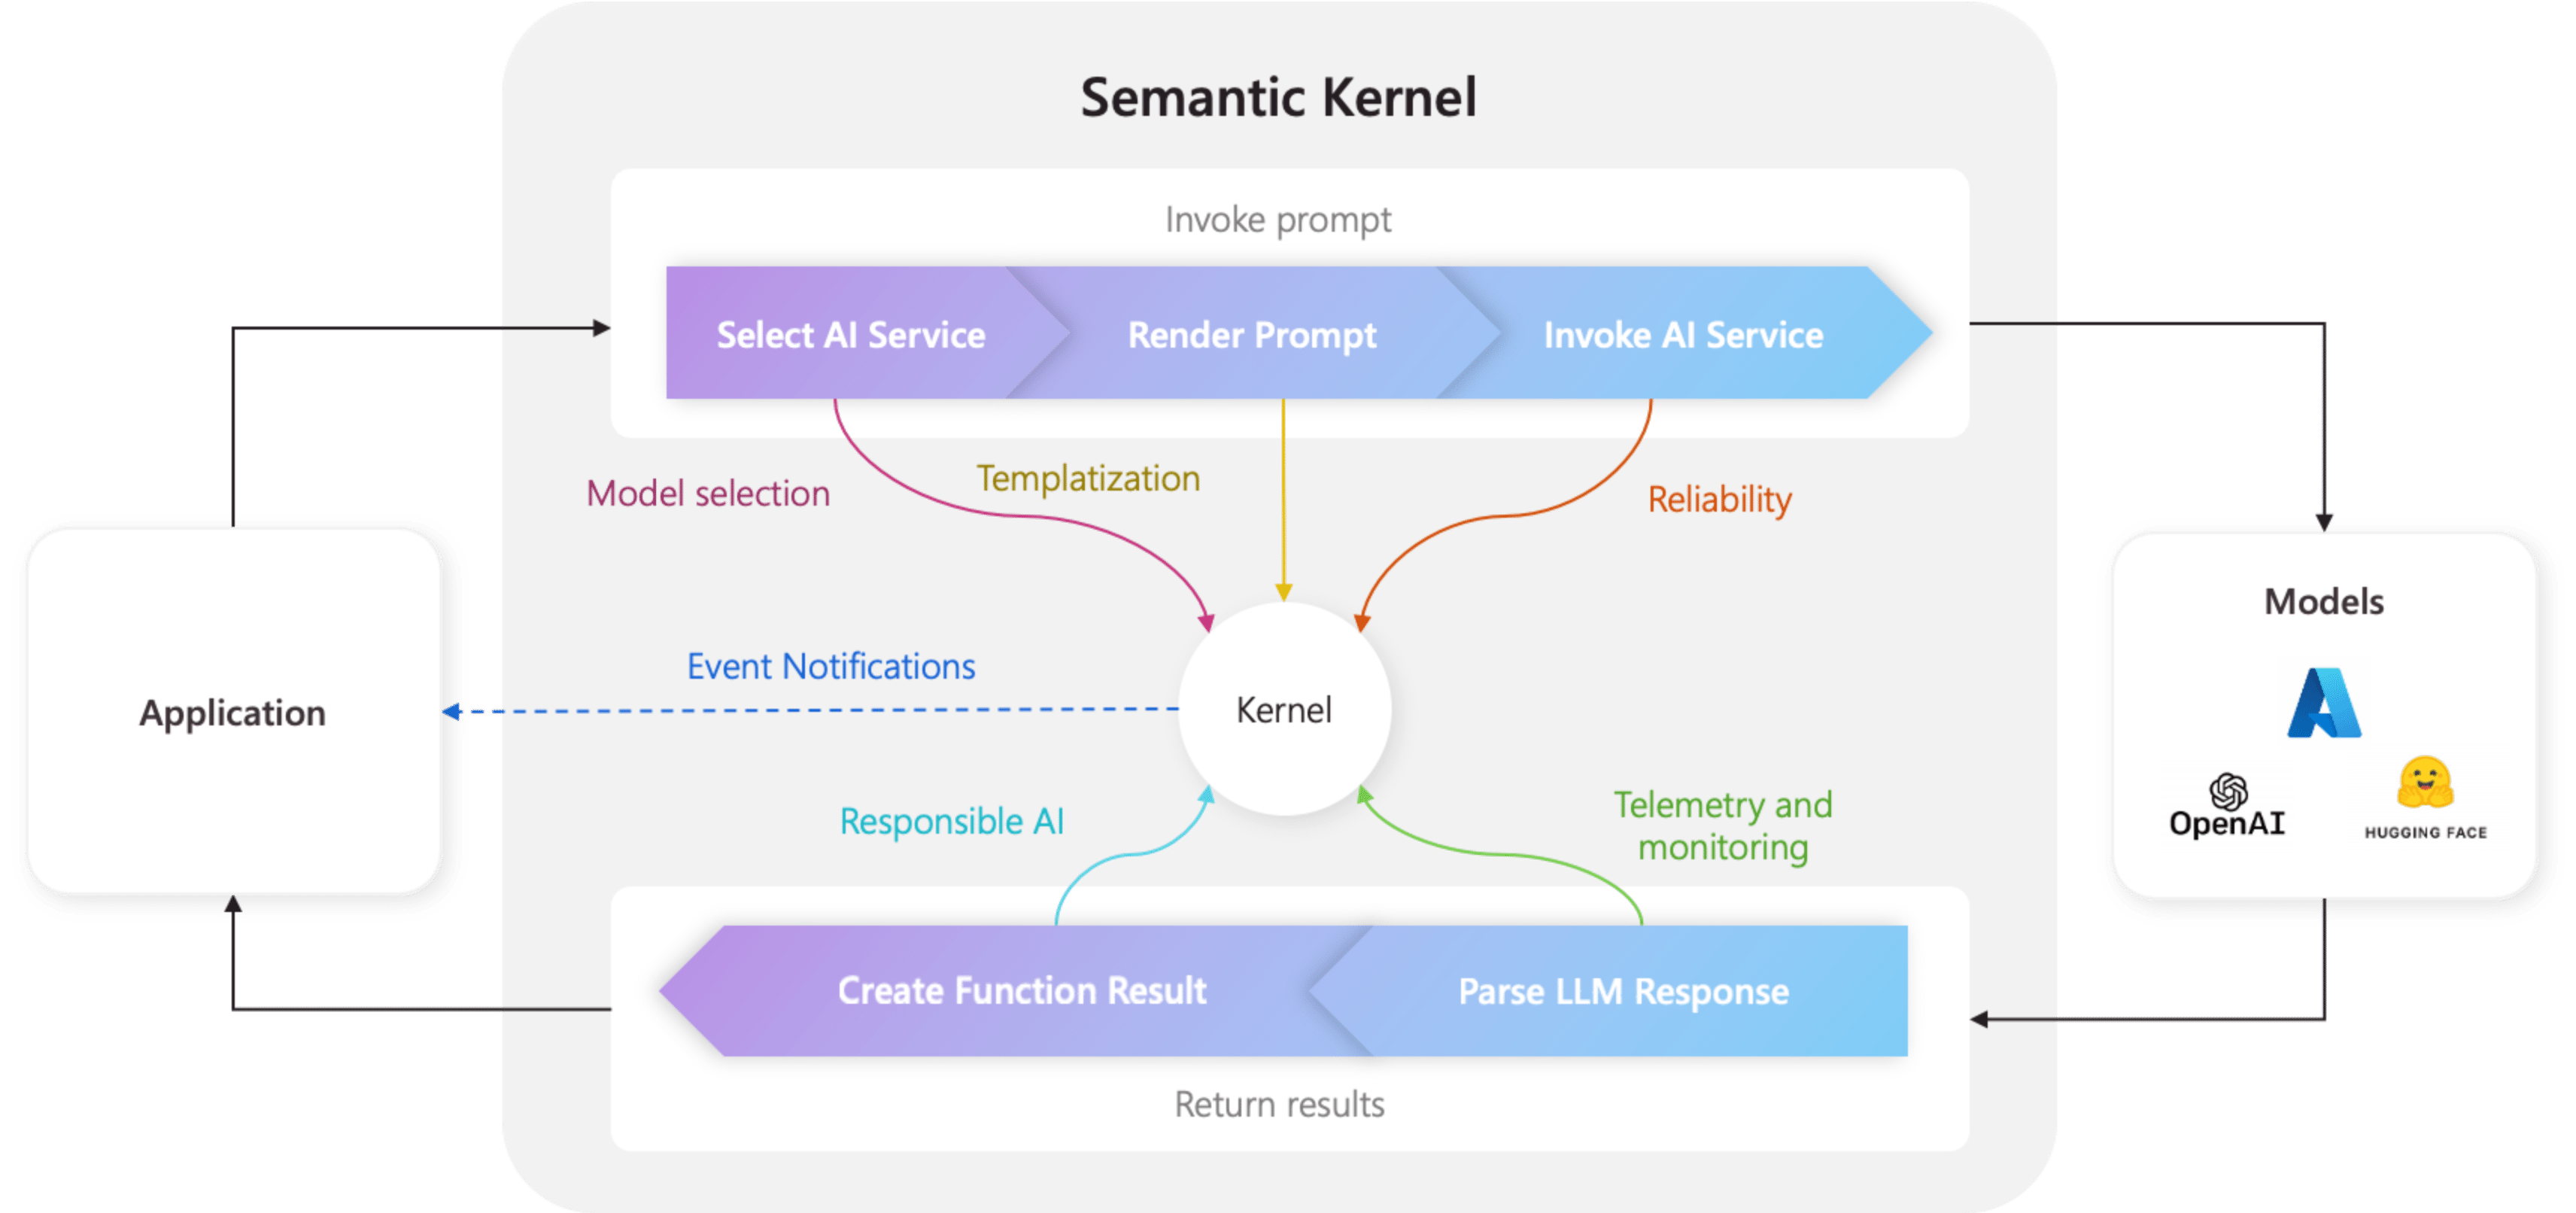 Understanding the kernel in Semantic Kernel